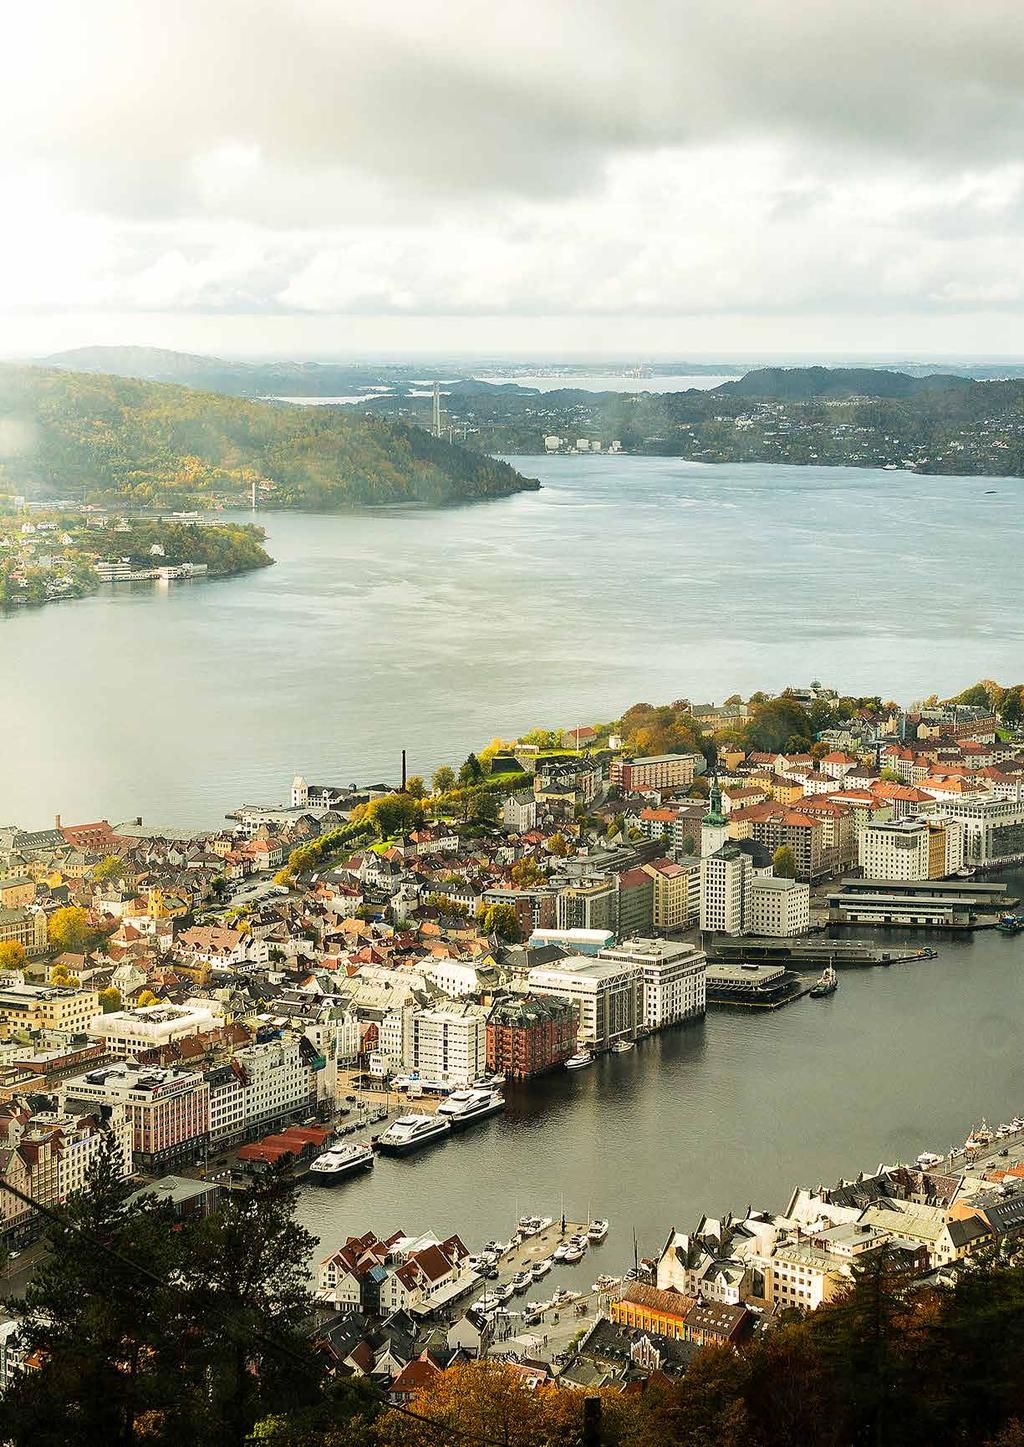 Velkommen til årets LANDSMØTE i Bergen! Landsmøtet er foreningens viktigste beslutningsarena og her legges grunnlaget for det arbeidet vi skal gjøre det kommende året.